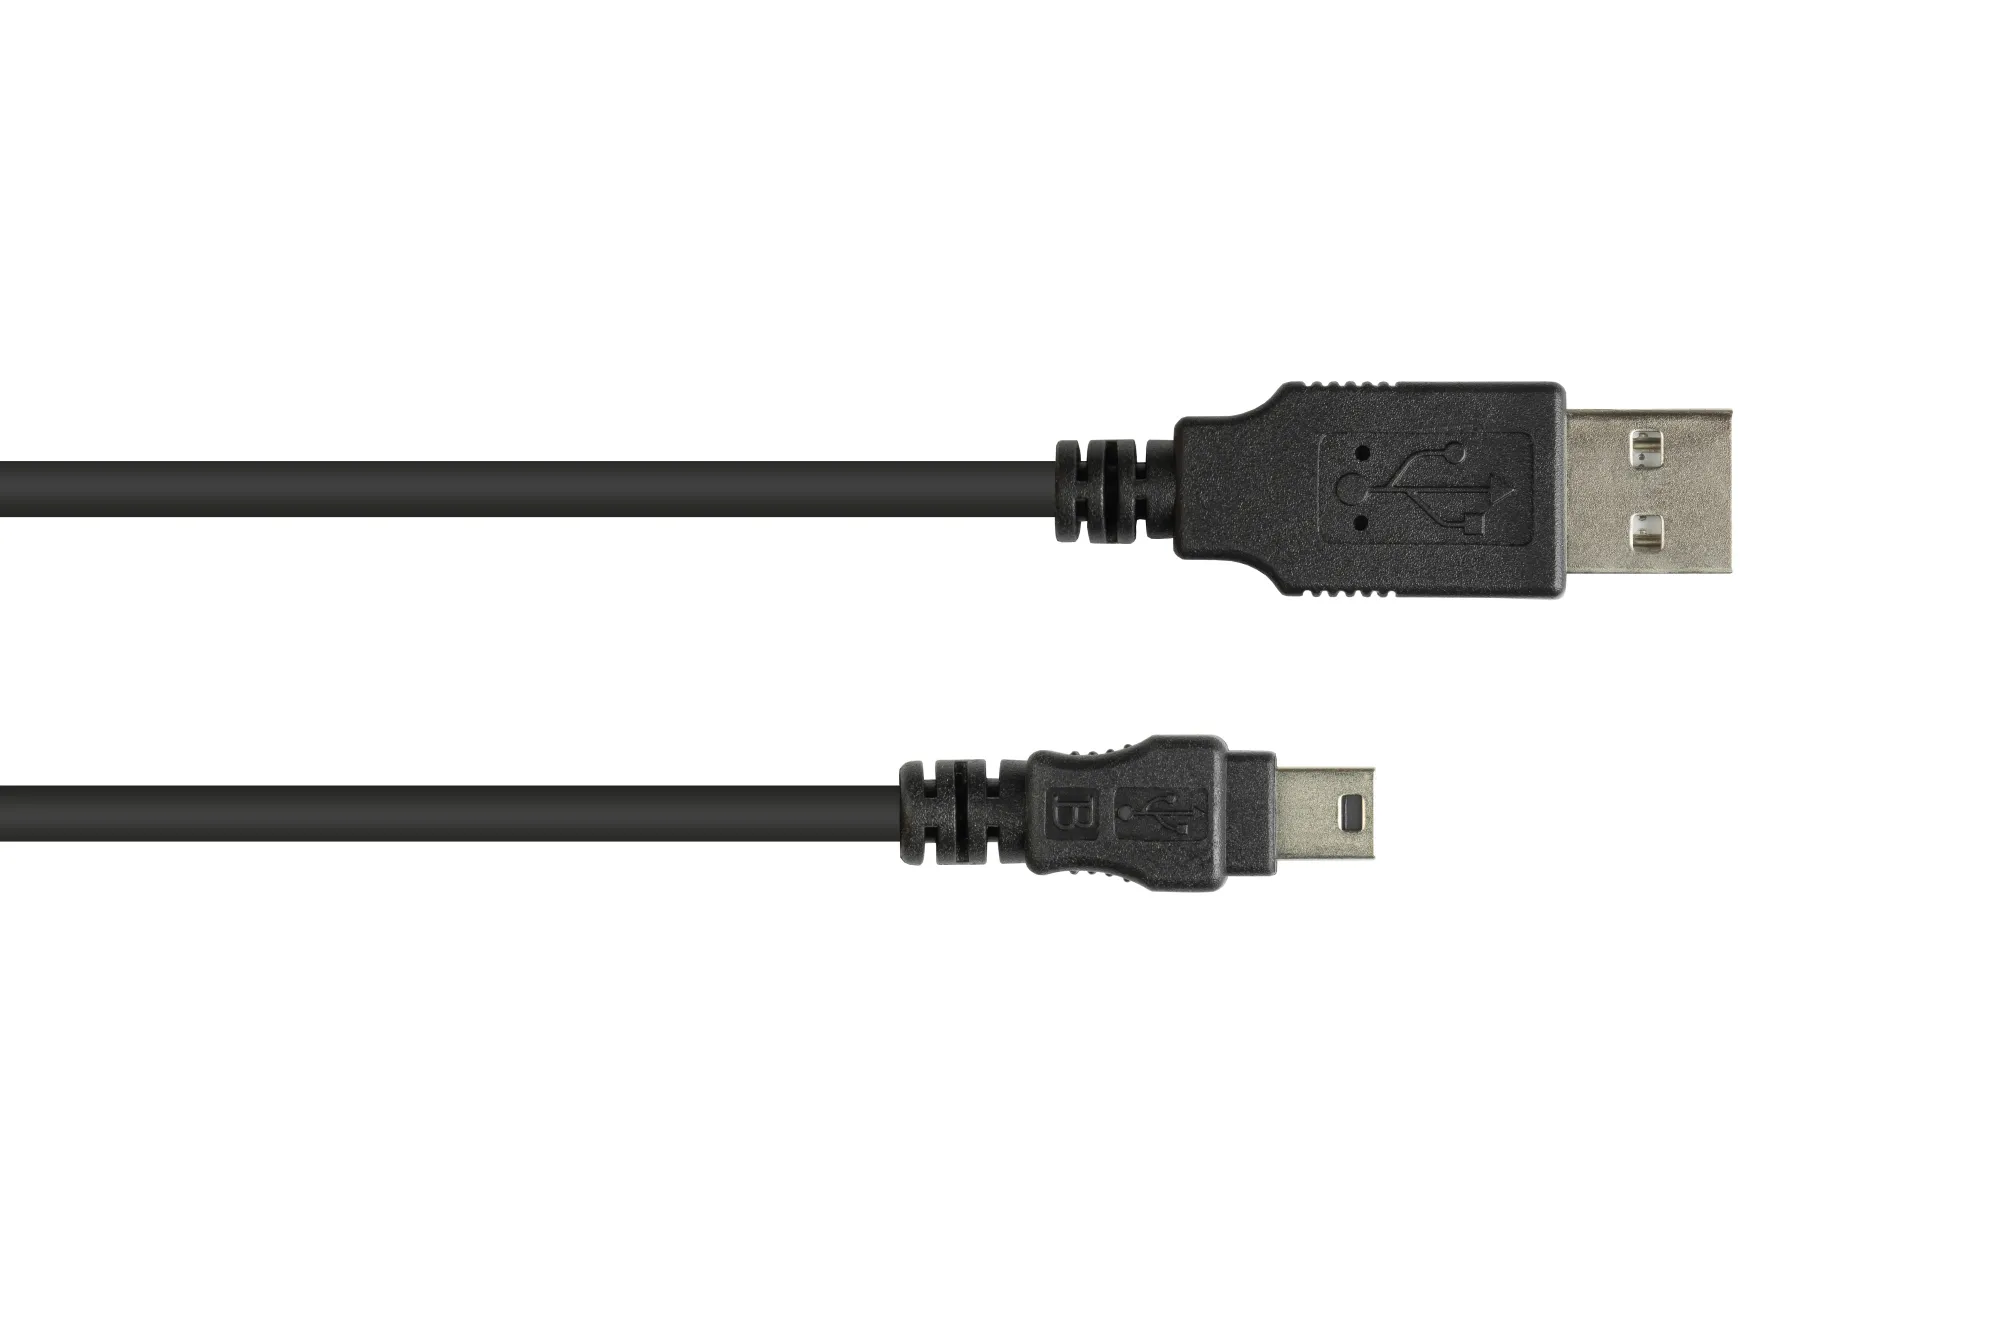 Anschlusskabel USB 2.0 Stecker A an Stecker Mini B 5-pin, schwarz, 5m, Good Connections®